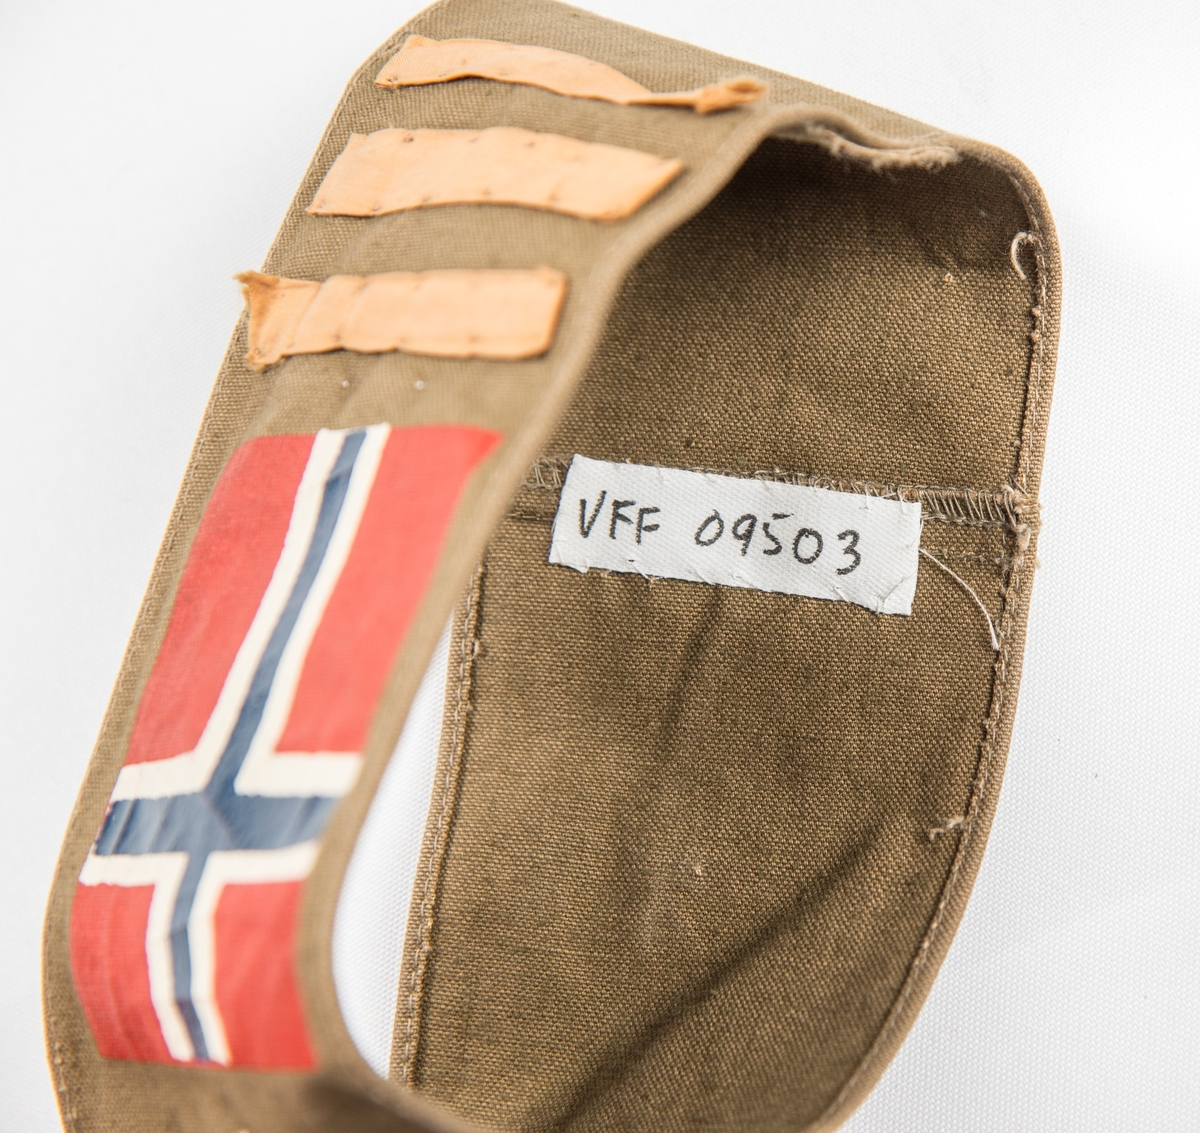 Armbind (Kaptein) i brunt bomullstøy. Påtrykt det norske flagget og påsydd tre tynne gule striper. Var sett på ermet til VFF 09539 Uniformsjakke (med knappenål).